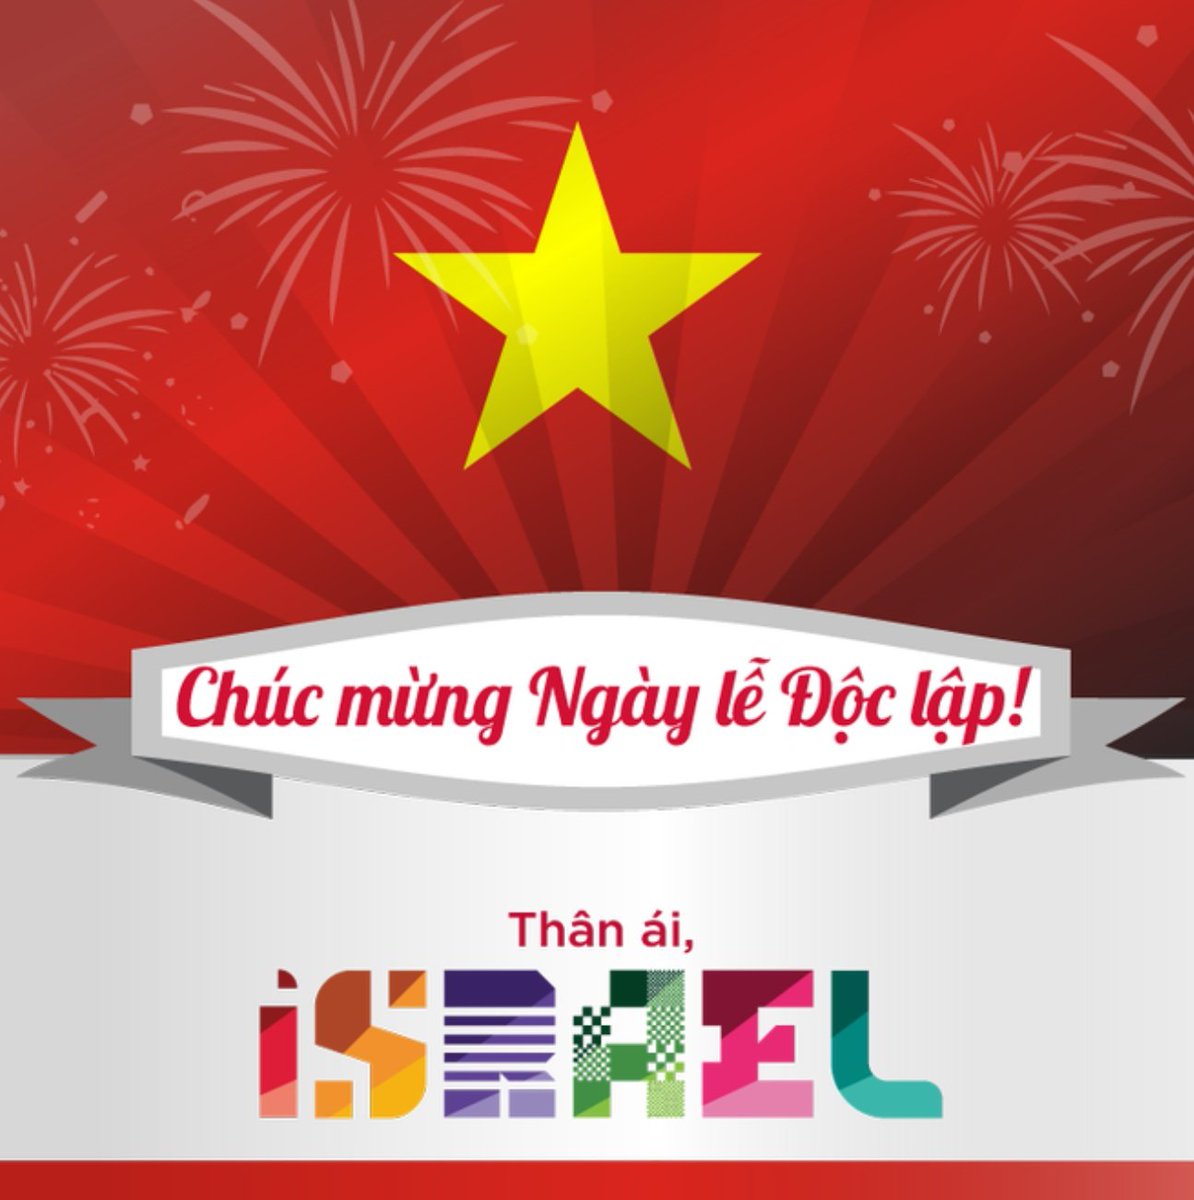 Trong ngày Quốc Khánh, chúng tôi xin gửi lời chúc tốt đẹp nhất đến quý khách và cả đất nước Việt Nam. Chúc quý khách và toàn thể người dân Việt Nam có một ngày lễ độc đáo, tràn đầy niềm vui, hạnh phúc và thịnh vượng. Cảm ơn Việt Nam yêu mến!